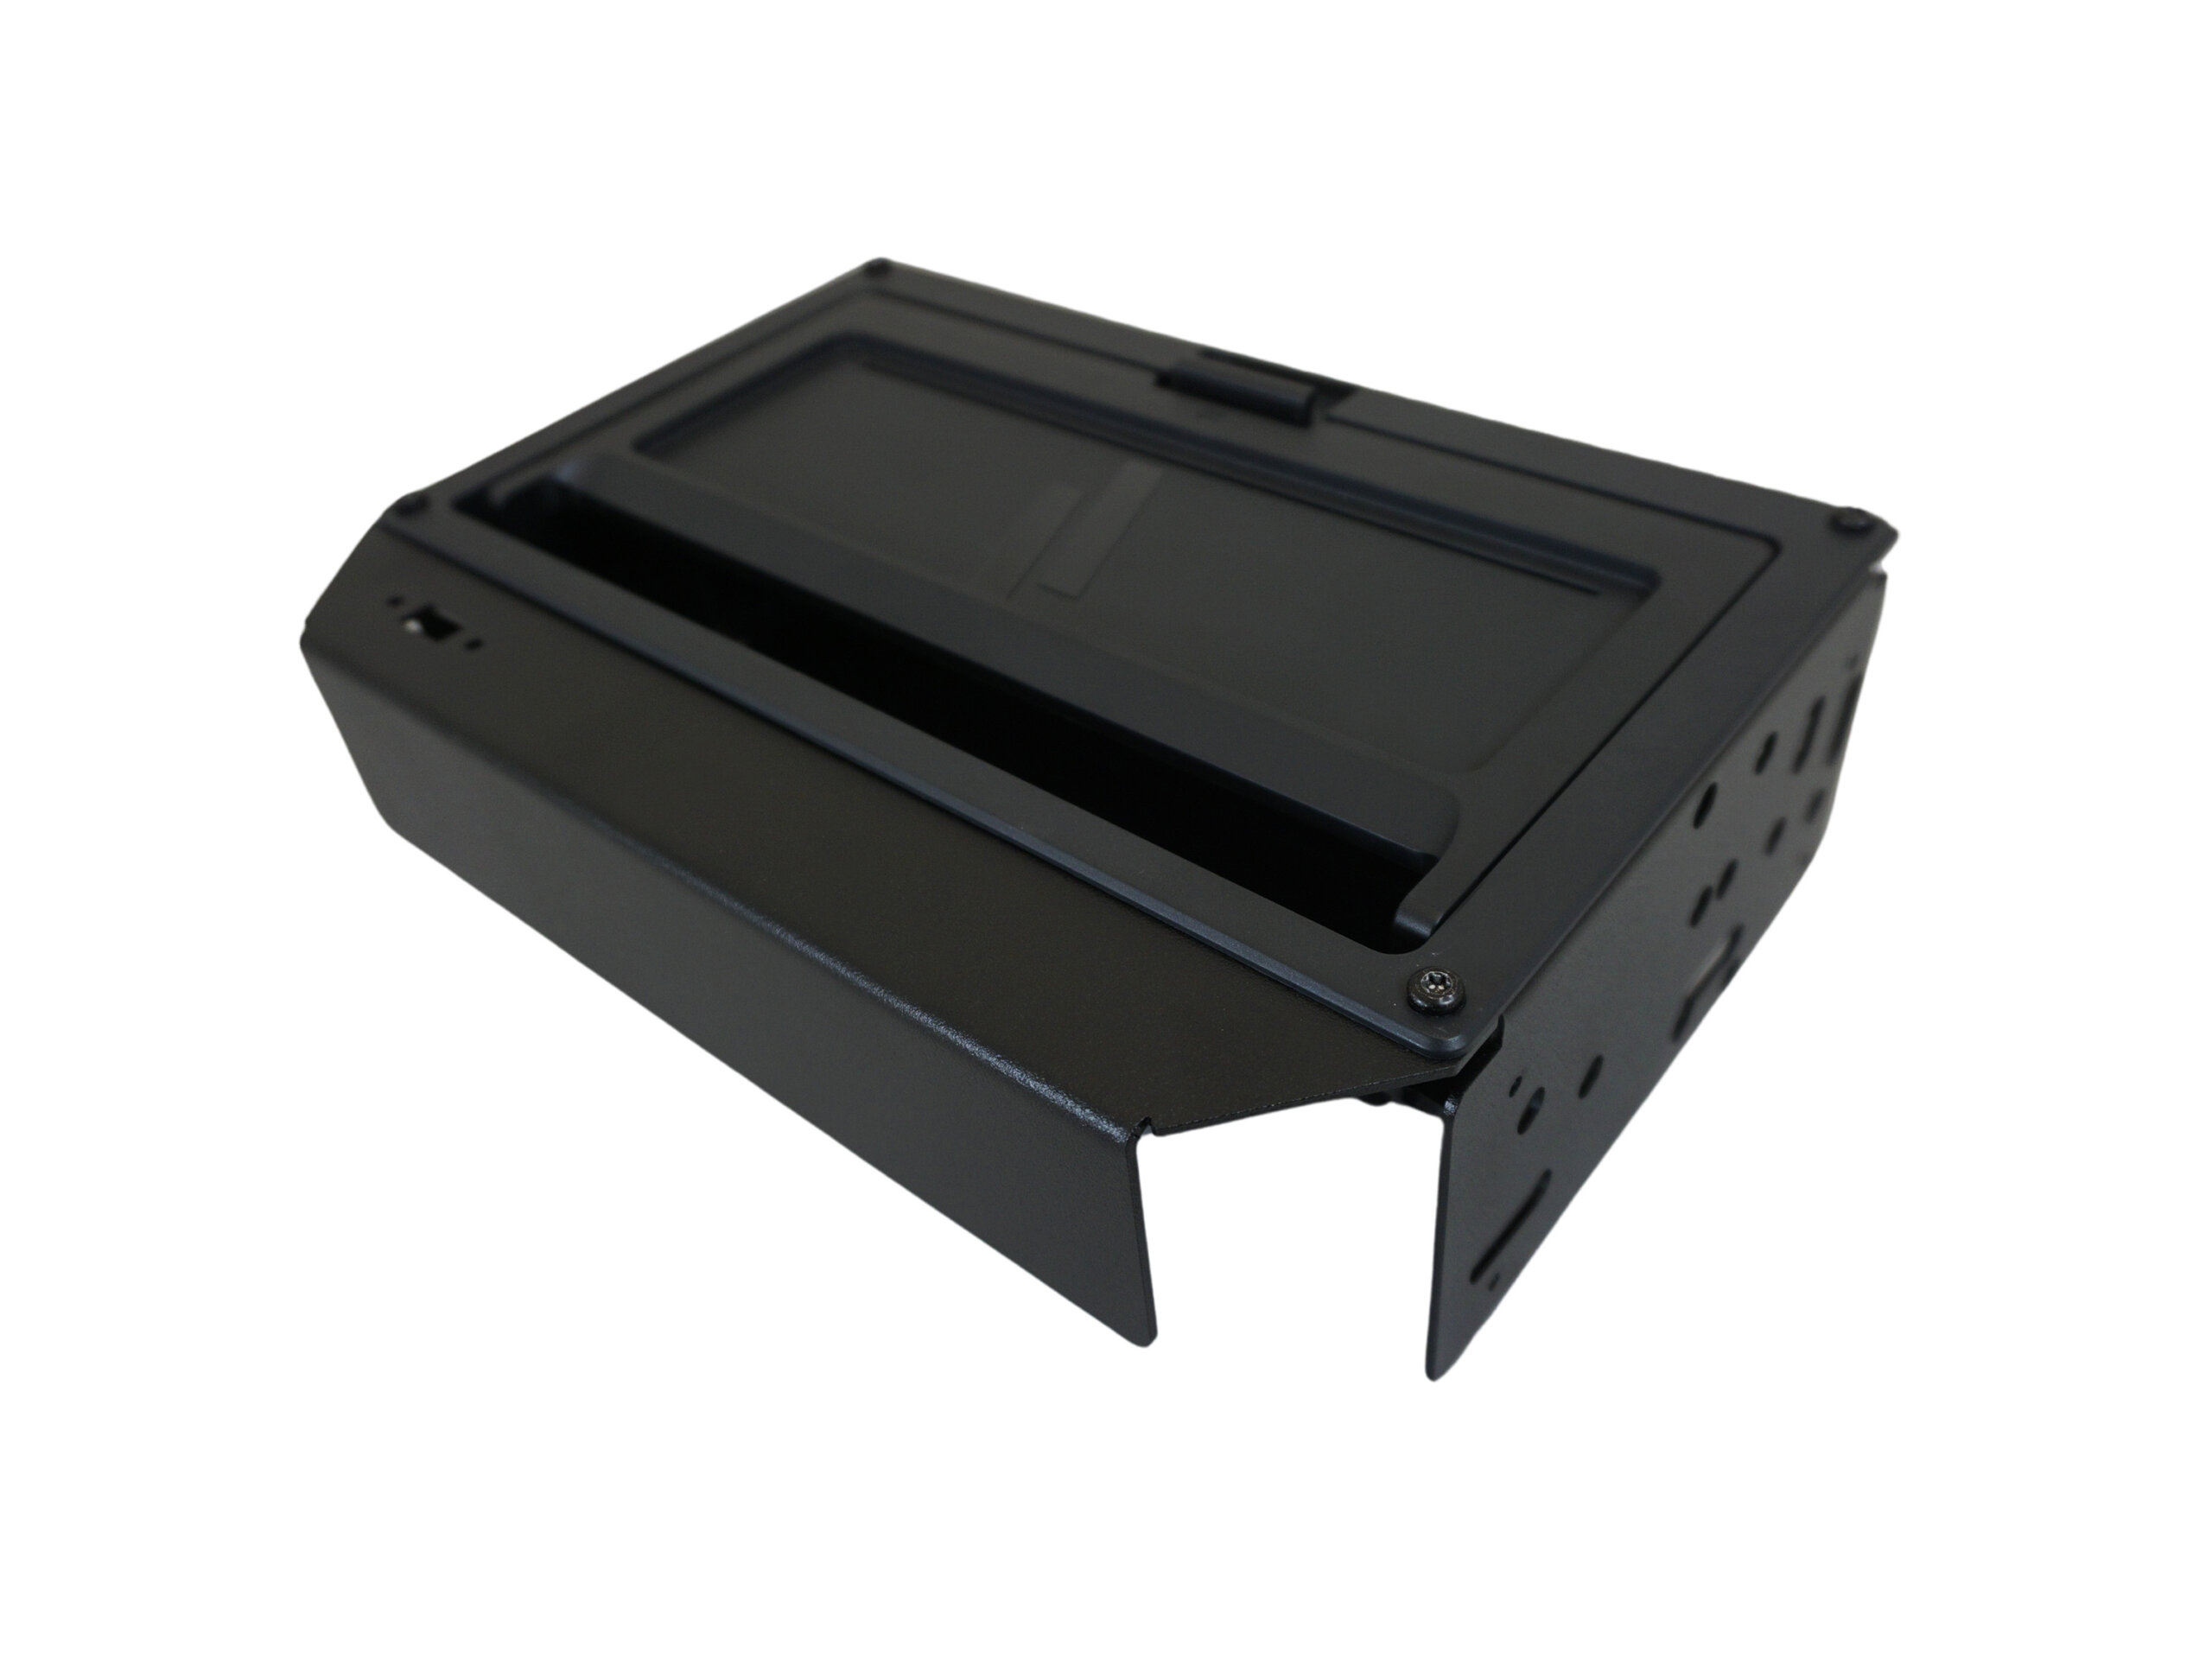 Brother PocketJet 6 & 7 Printer Mount for Ford Interceptor Utility